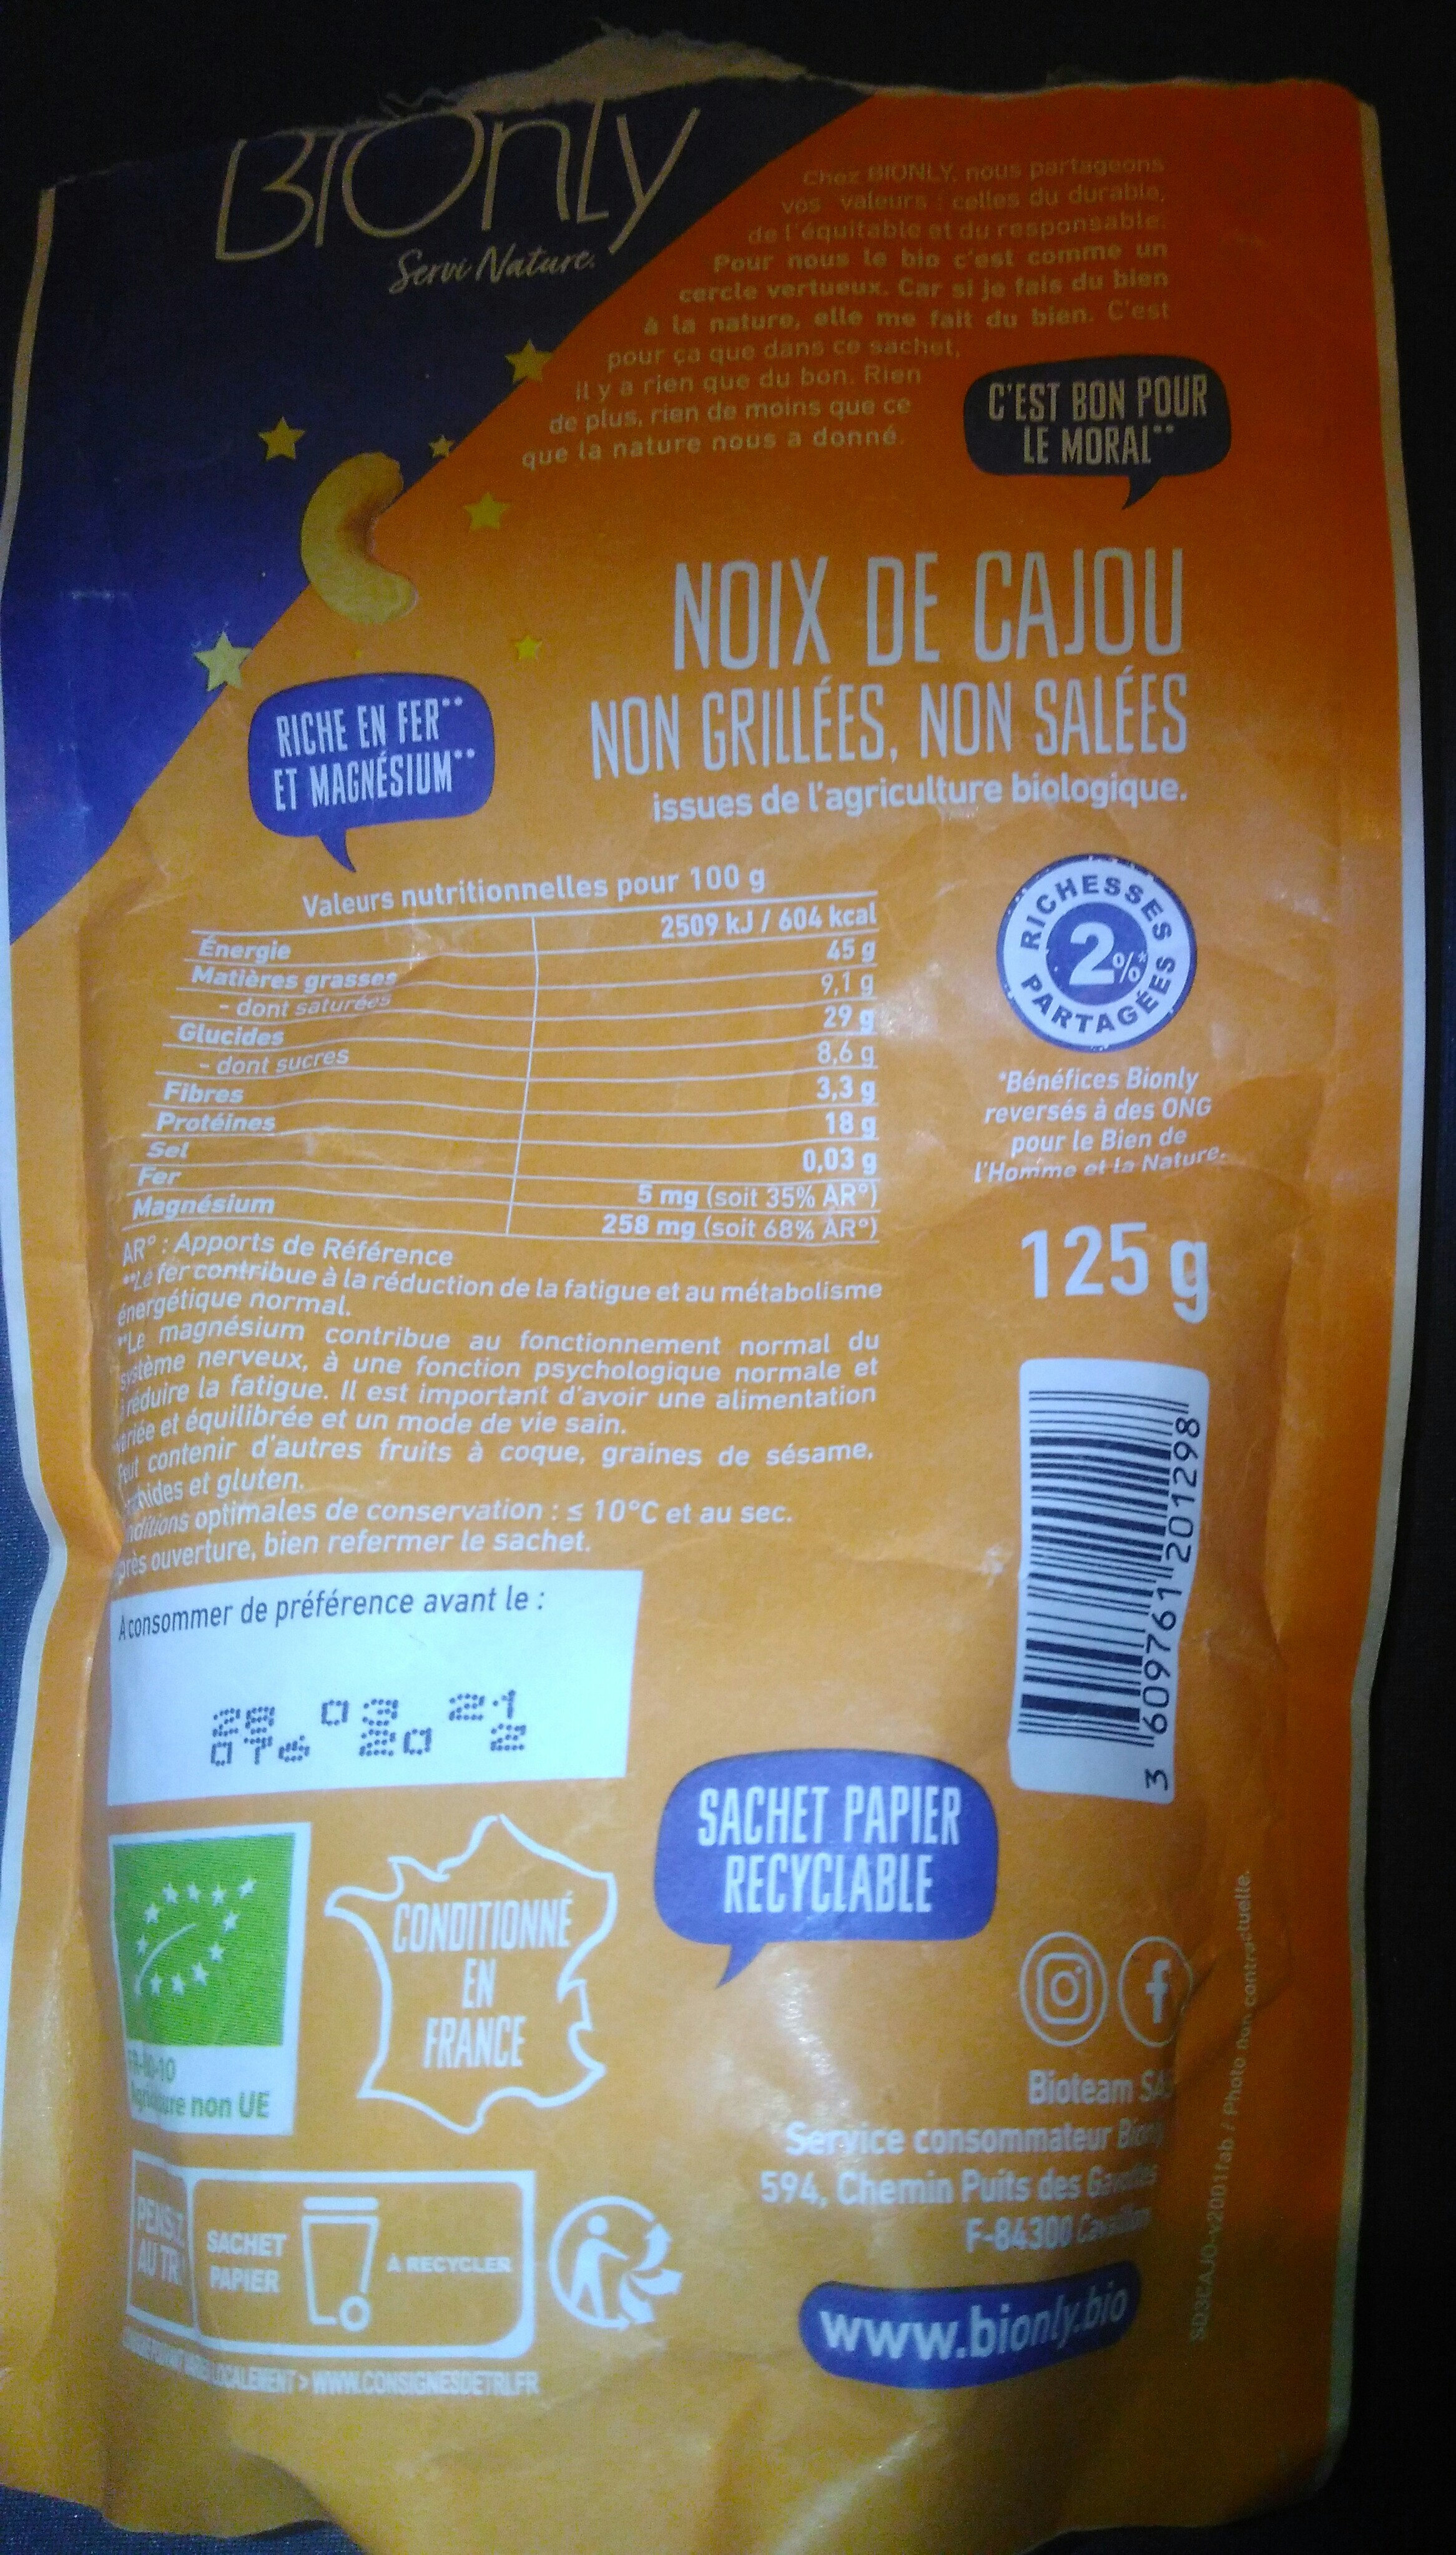 La noix de cajou - Ingredients - fr